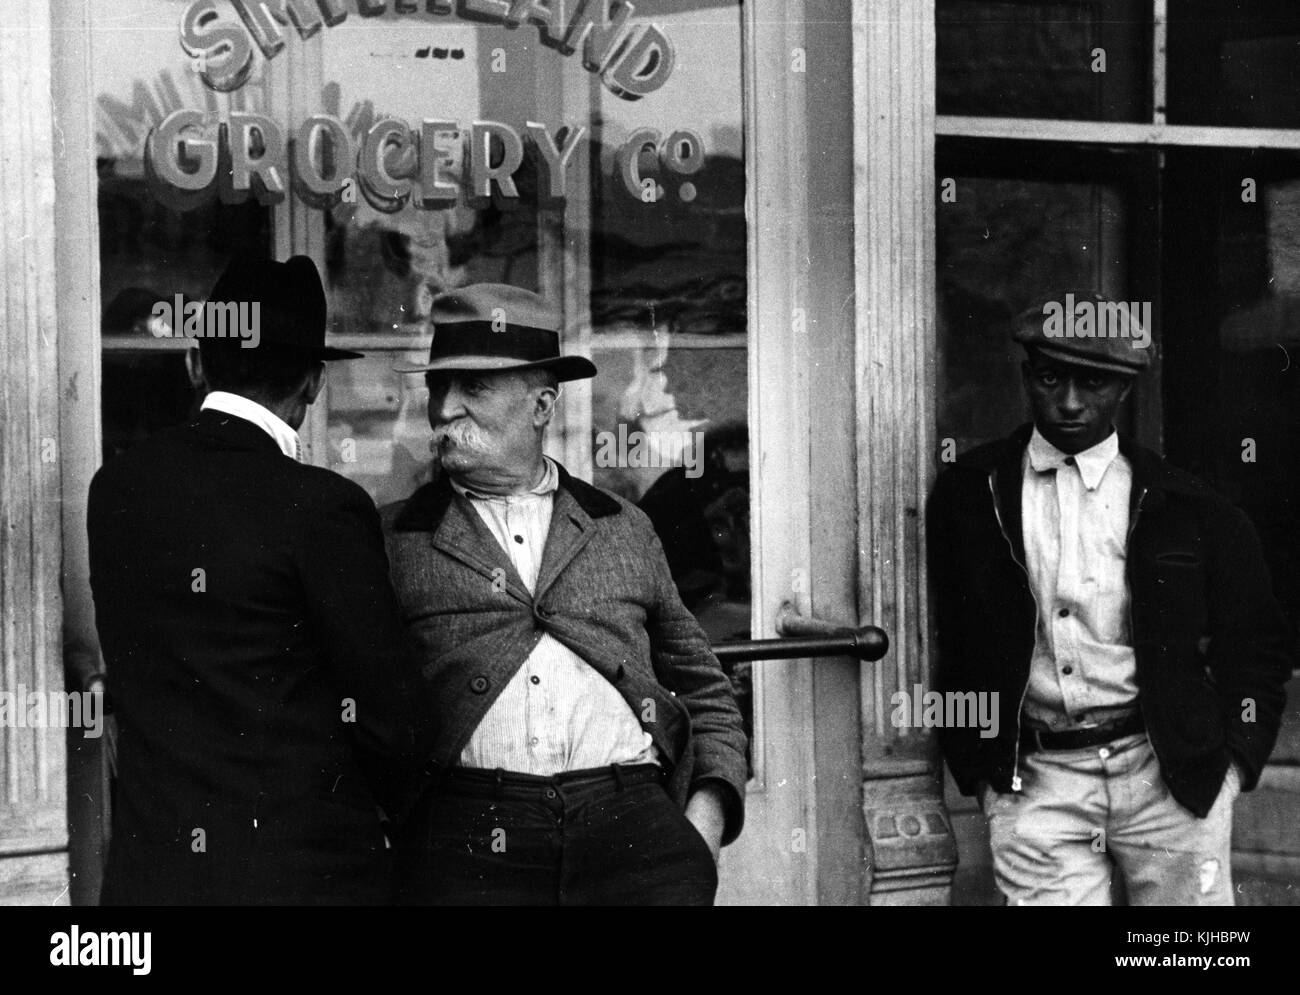 Schwarz-weiß Foto von zwei weißen Männern und einem afrikanisch-amerikanischen Mann, vor einem Lebensmittelgeschäft, von Ben Shahn, in Litauen geborenen amerikanischen Künstler für seine Arbeit bekannt für die Farm Security Administration dokumentieren die Auswirkungen der Großen Depression, smithland, Kentucky, 1935 von der New York Public Library. Stockfoto